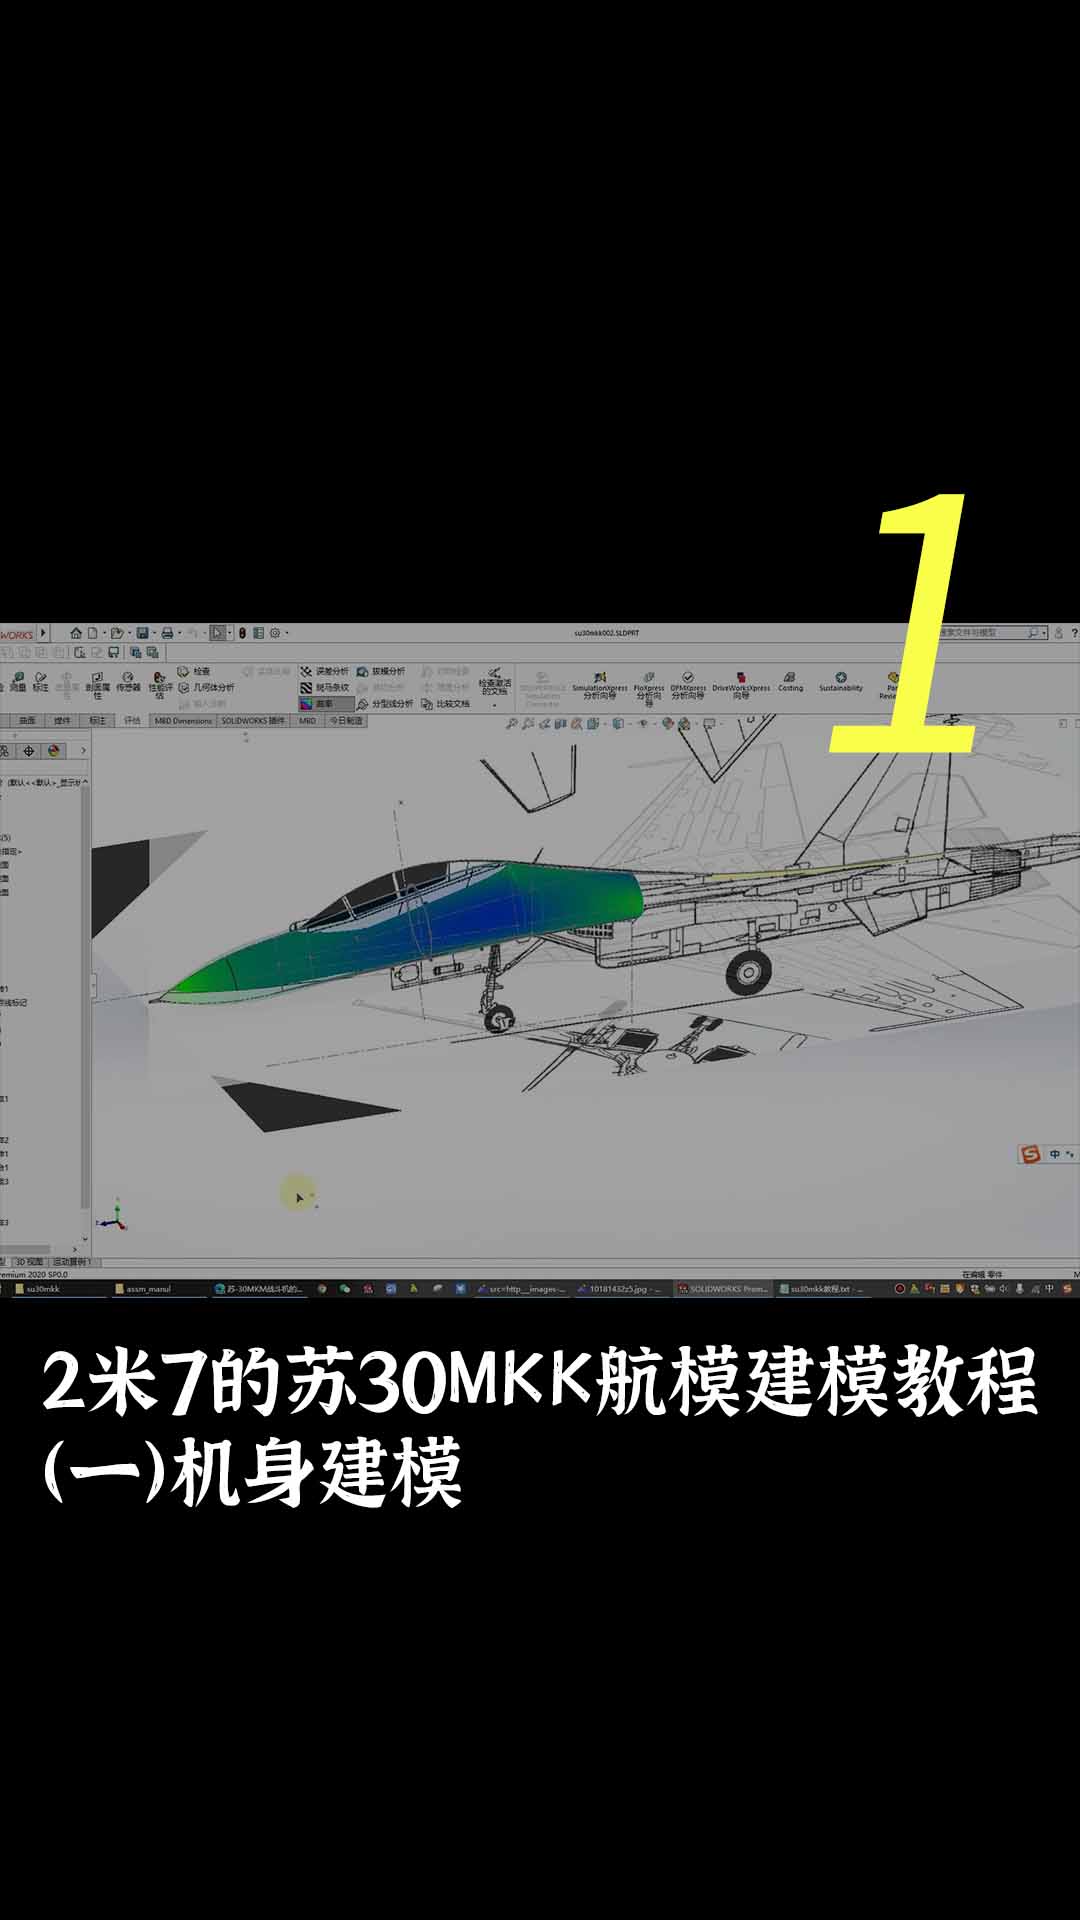 2米7的苏30MKK航模建模教程（一）机身建模1